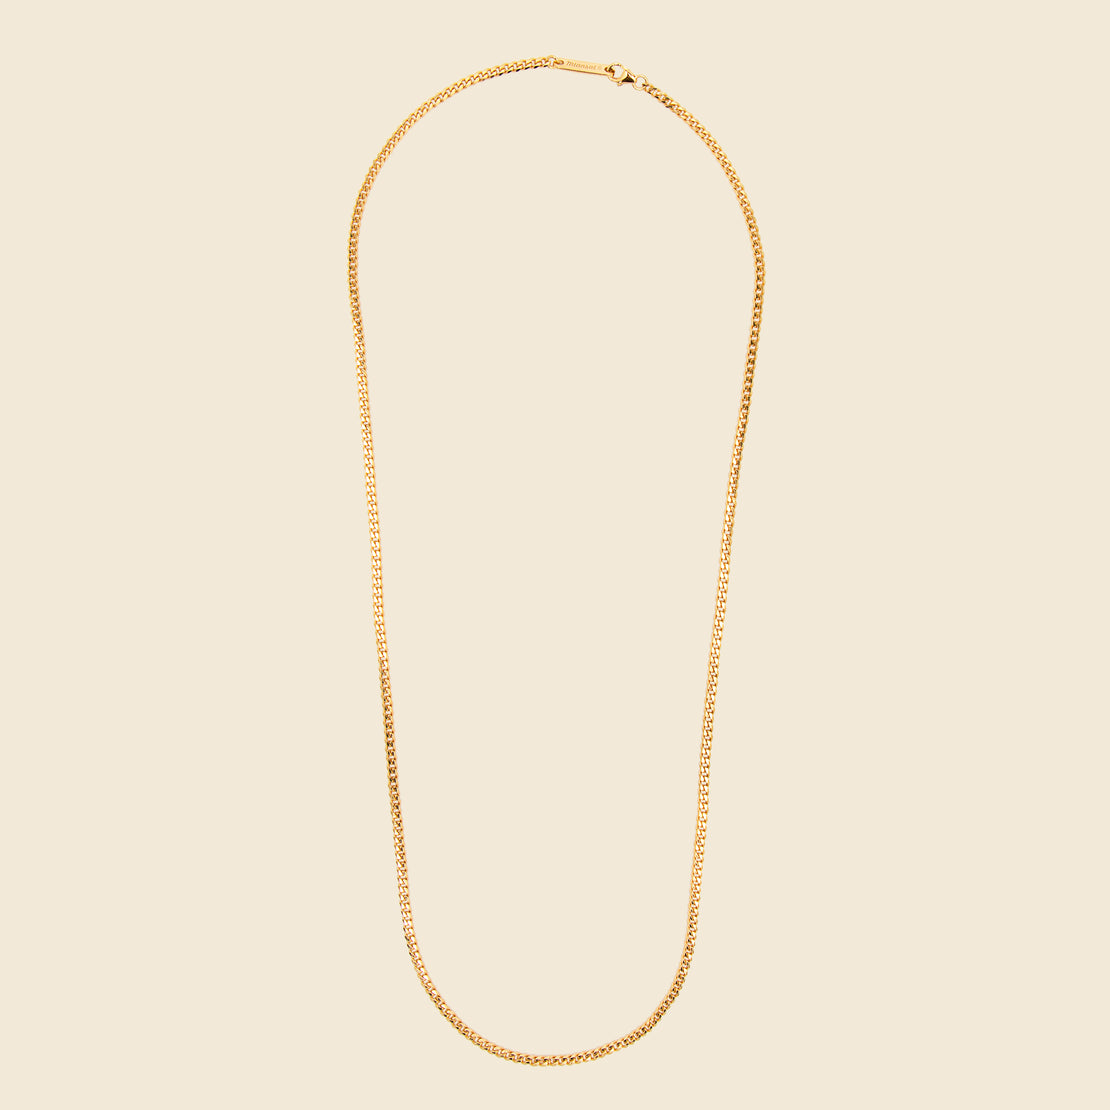 Miansai 3mm Cuban Chain Necklace - Gold Vermeil